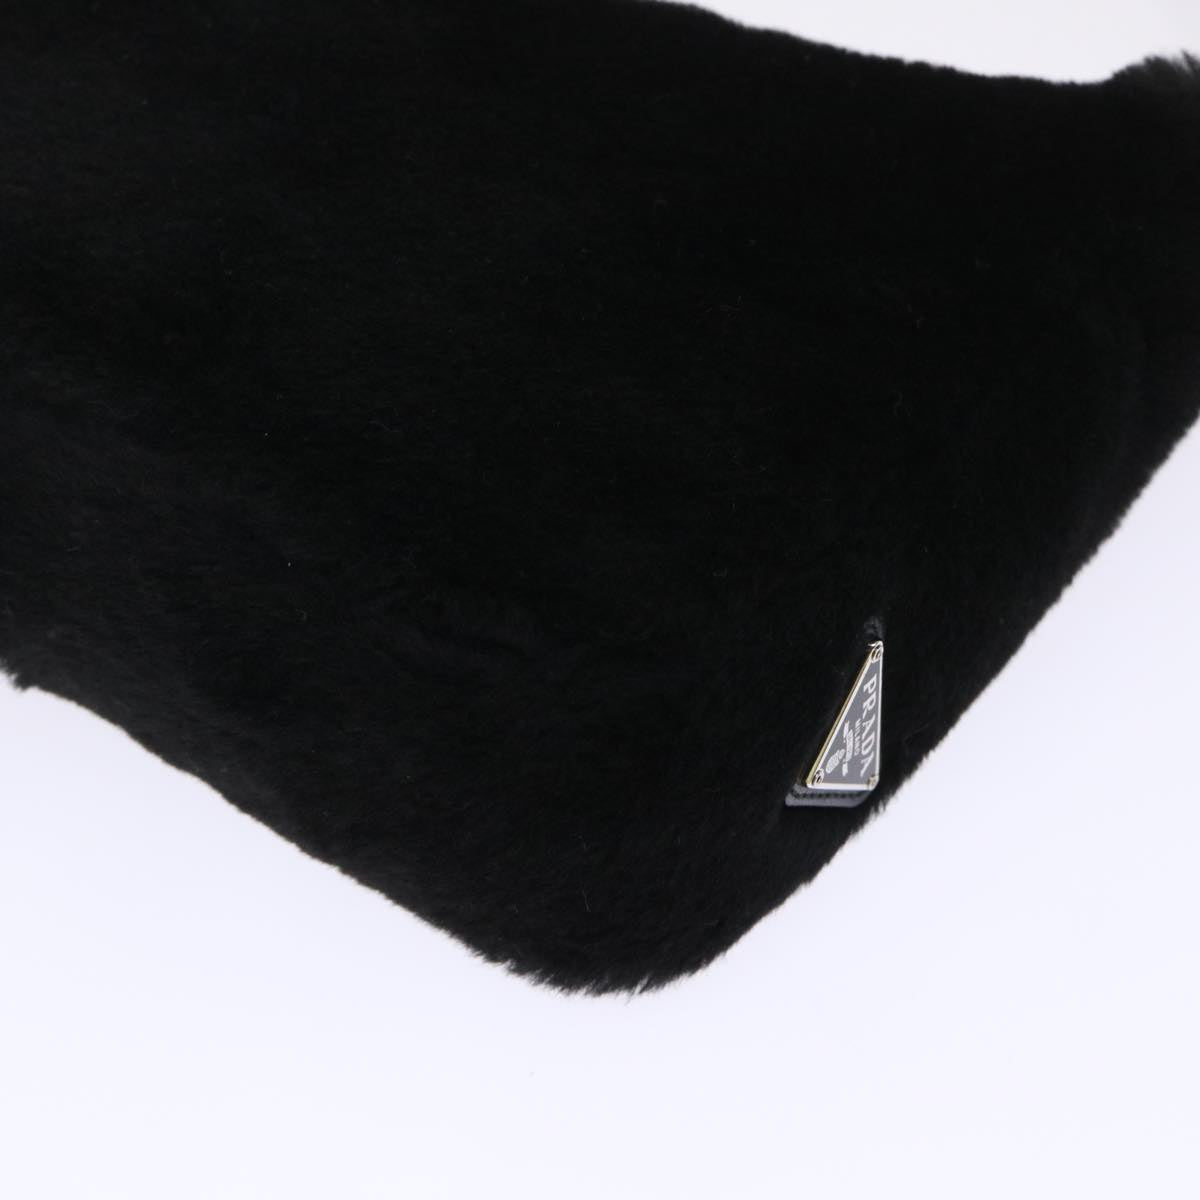 PRADA Terry Hand Bag Fabric Black White Auth 47379A